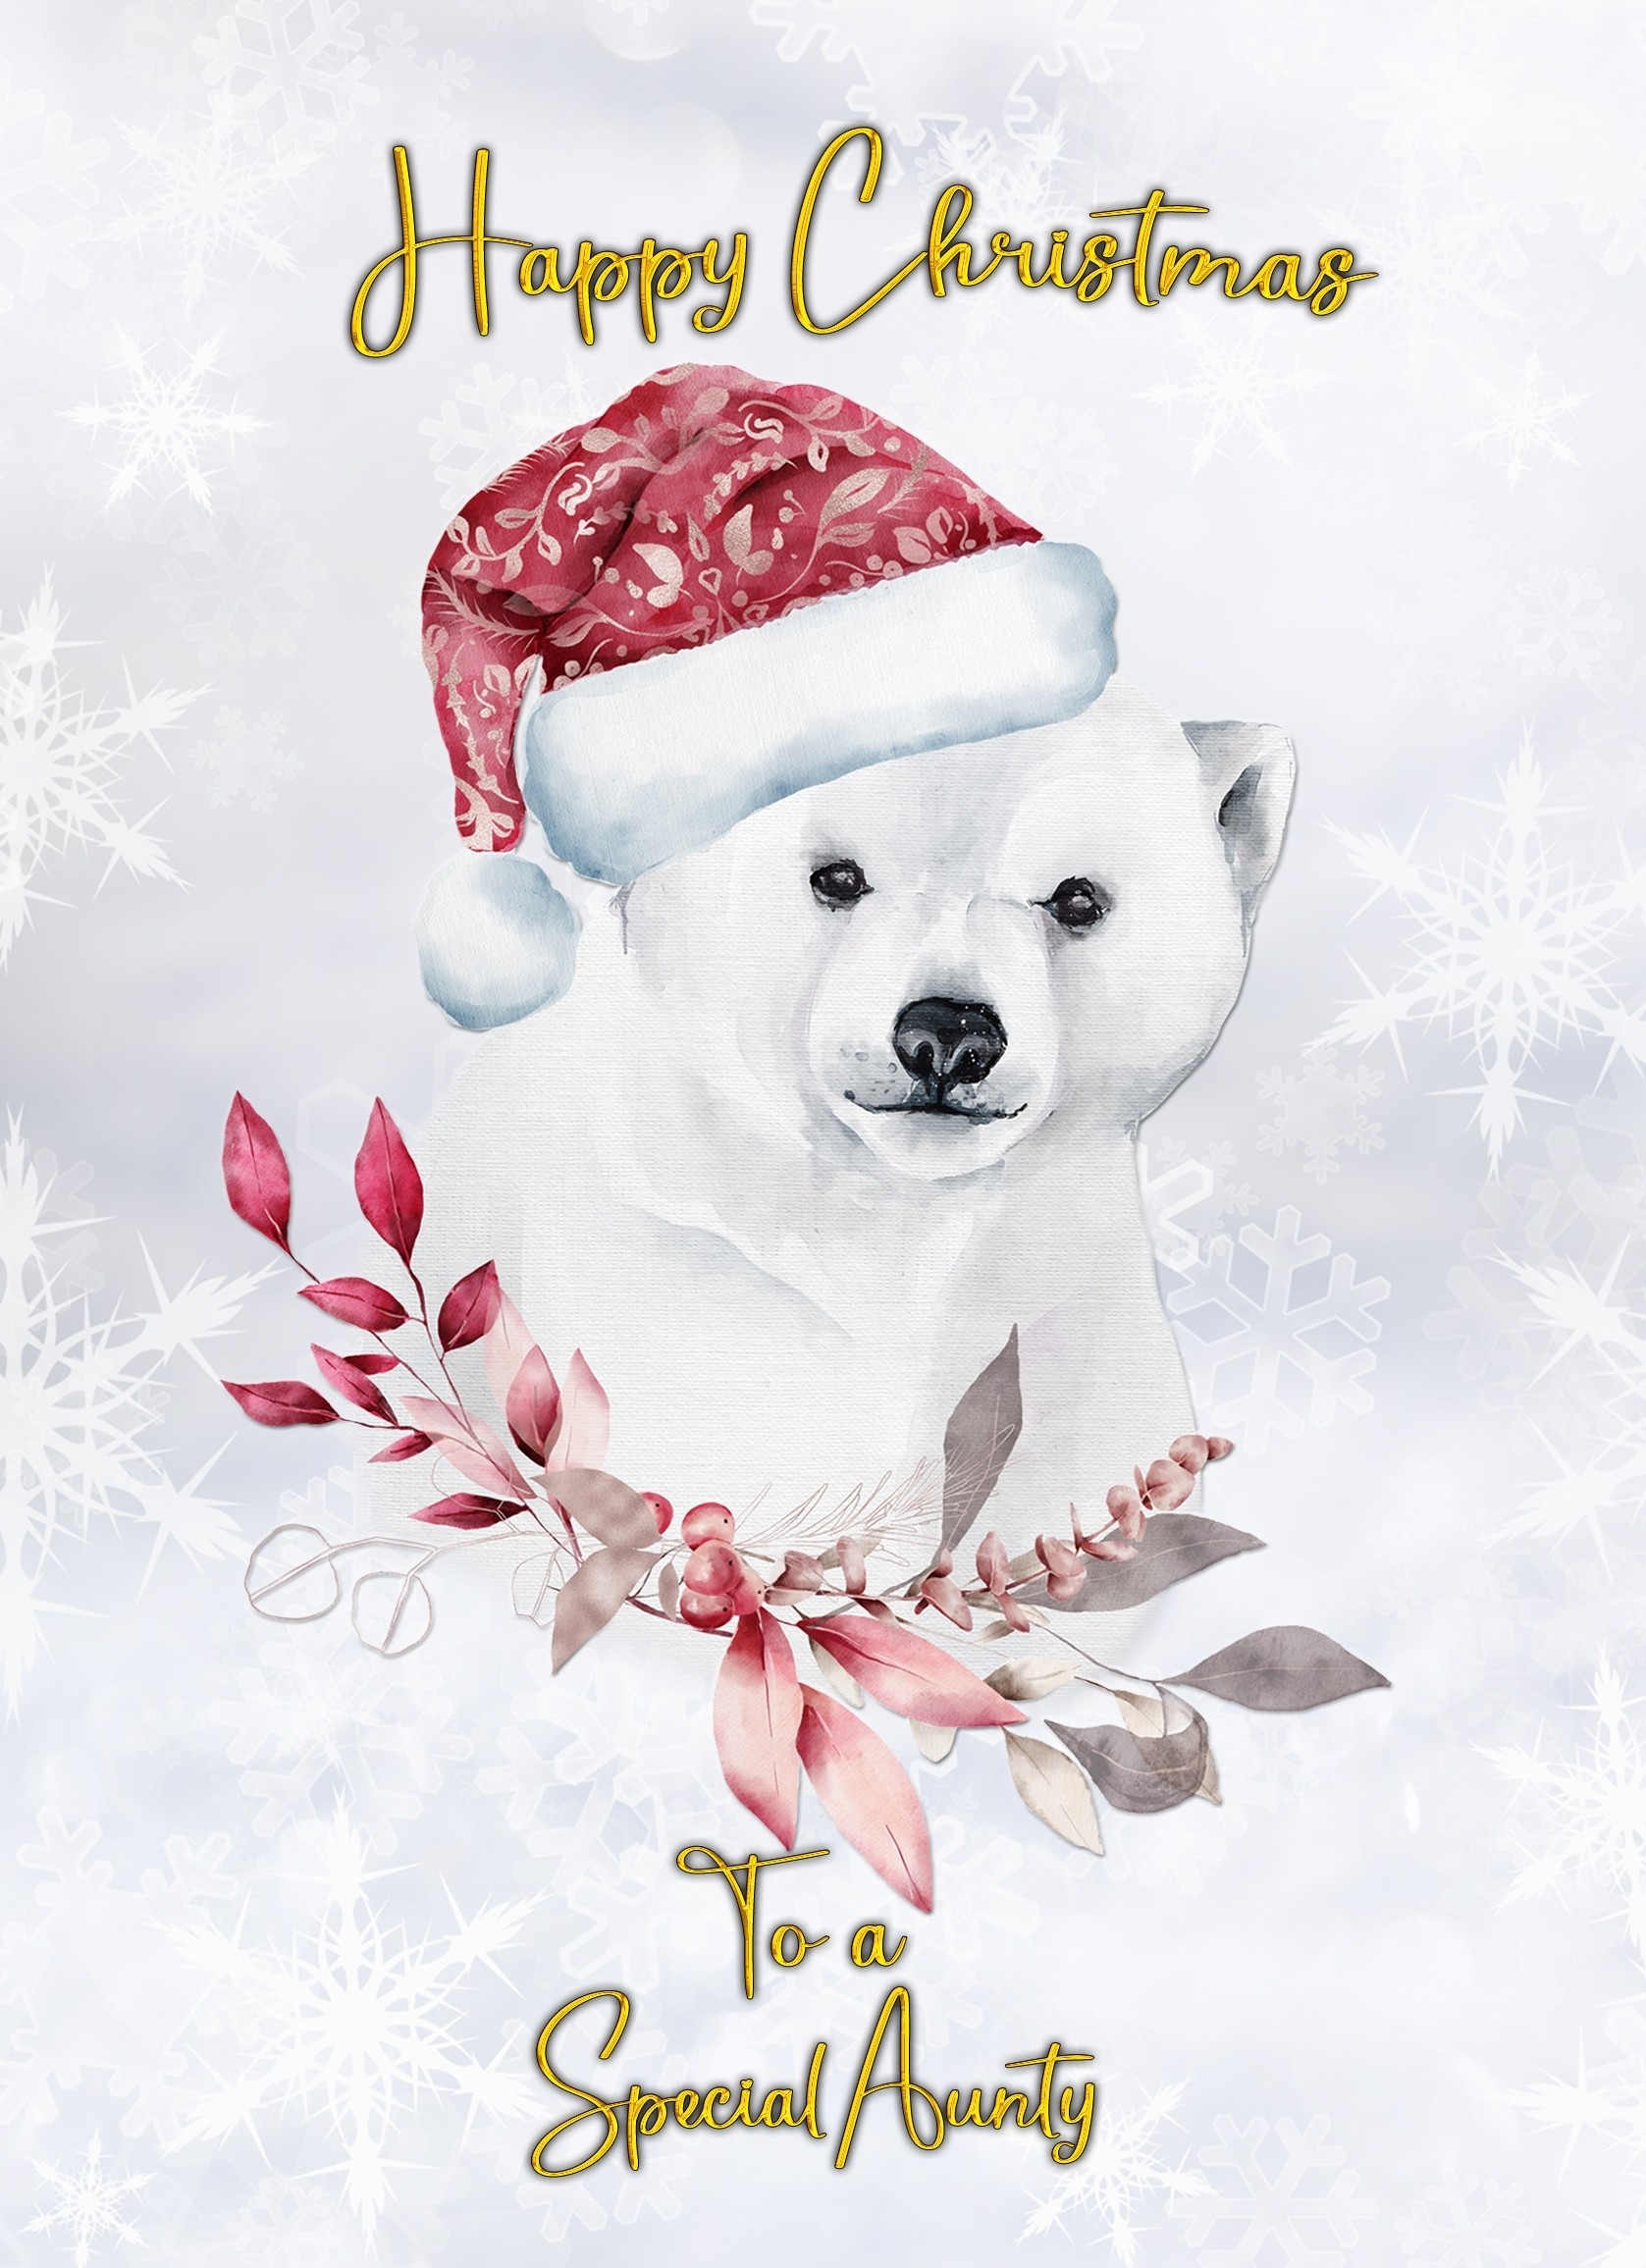 Christmas Card For Aunty (Polar Bear)